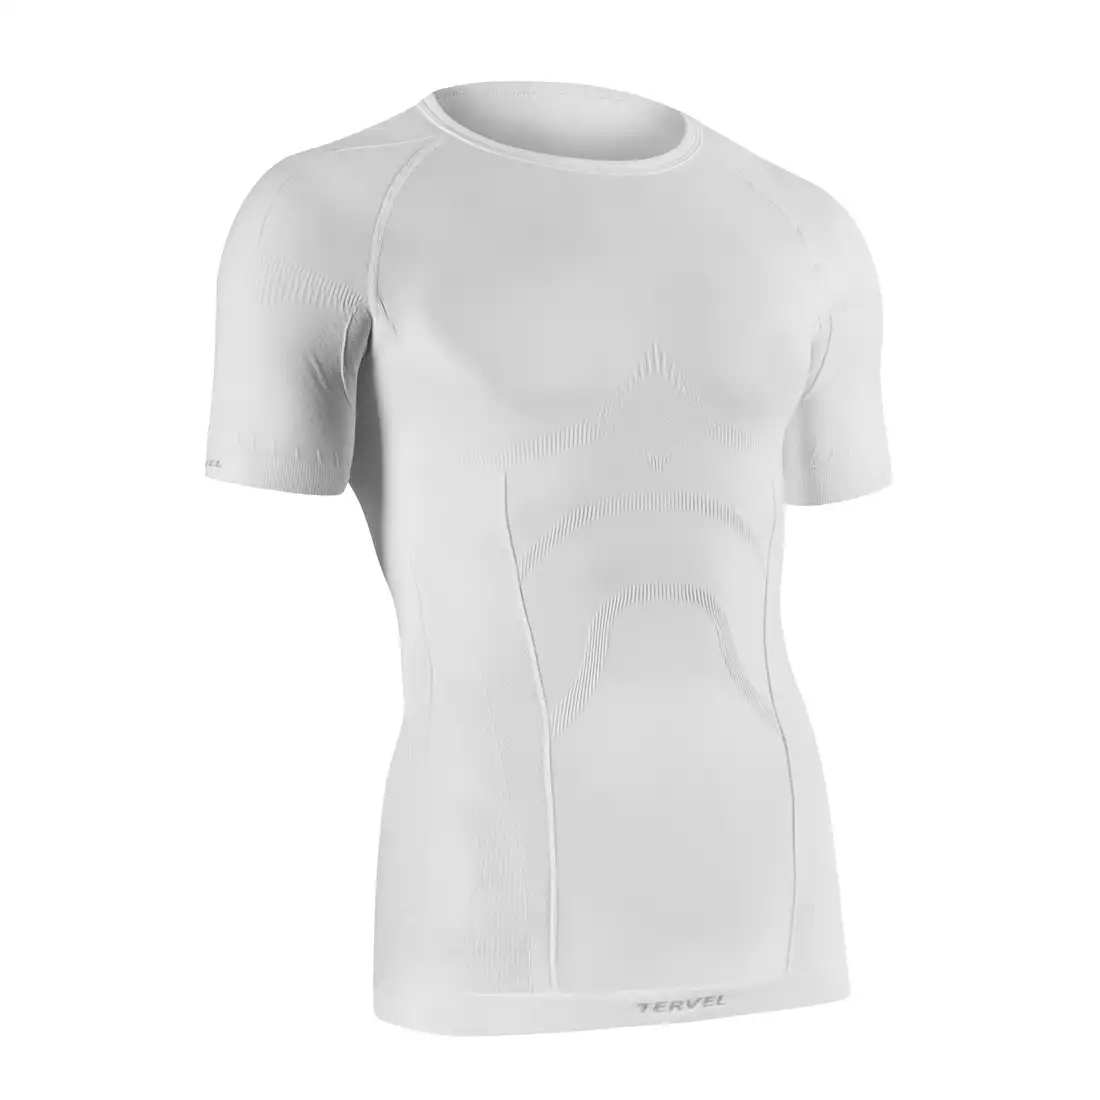 TERVEL COMFORTLINE 1102 - męska koszulka termoaktywna, krótki rękaw, kolor: Biały